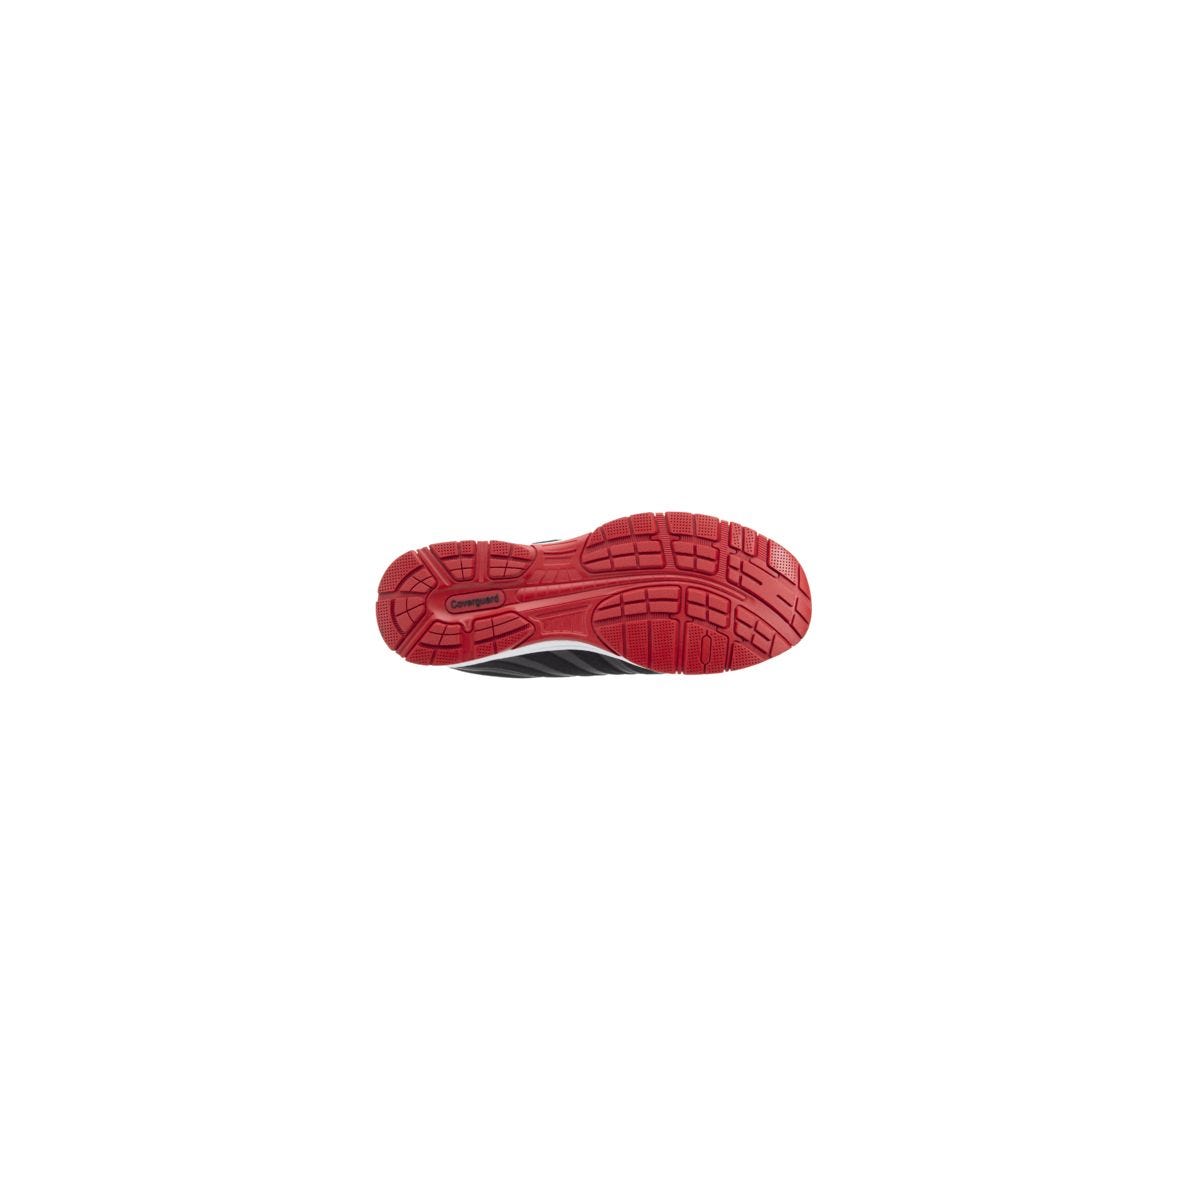 Chaussures de sécurité S1P GALAXITE Basse Maille Noir Rouge ESD - COVERGUARD - Taille 44 1